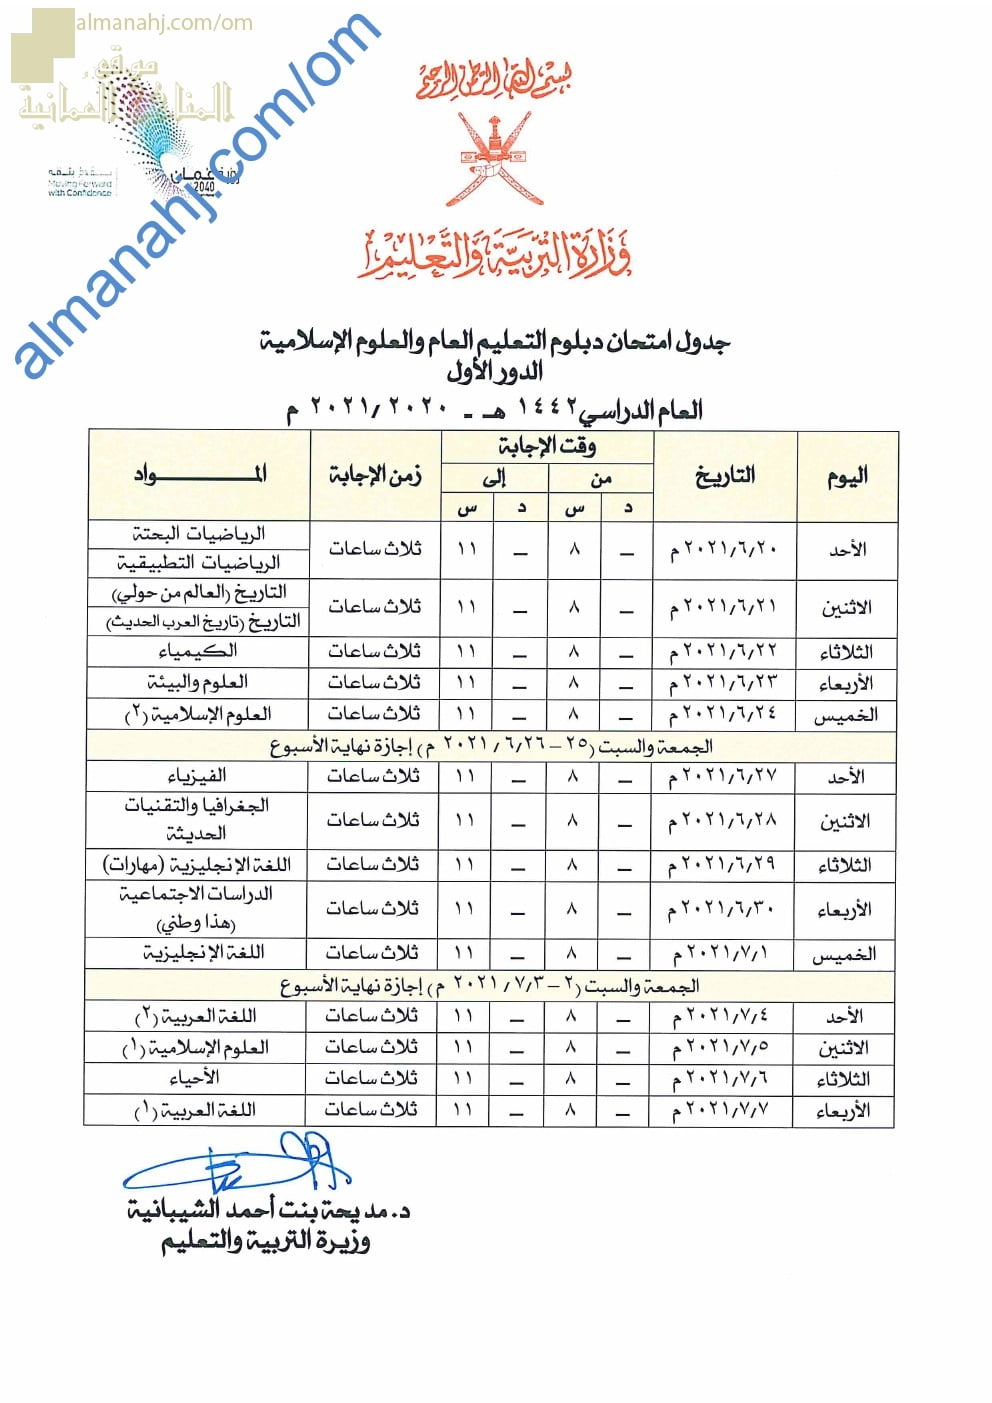 جدول امتحانات دبلوم التعليم العام والعلوم الاسلامية -الدور الأول (الامتحانات) الثاني عشر